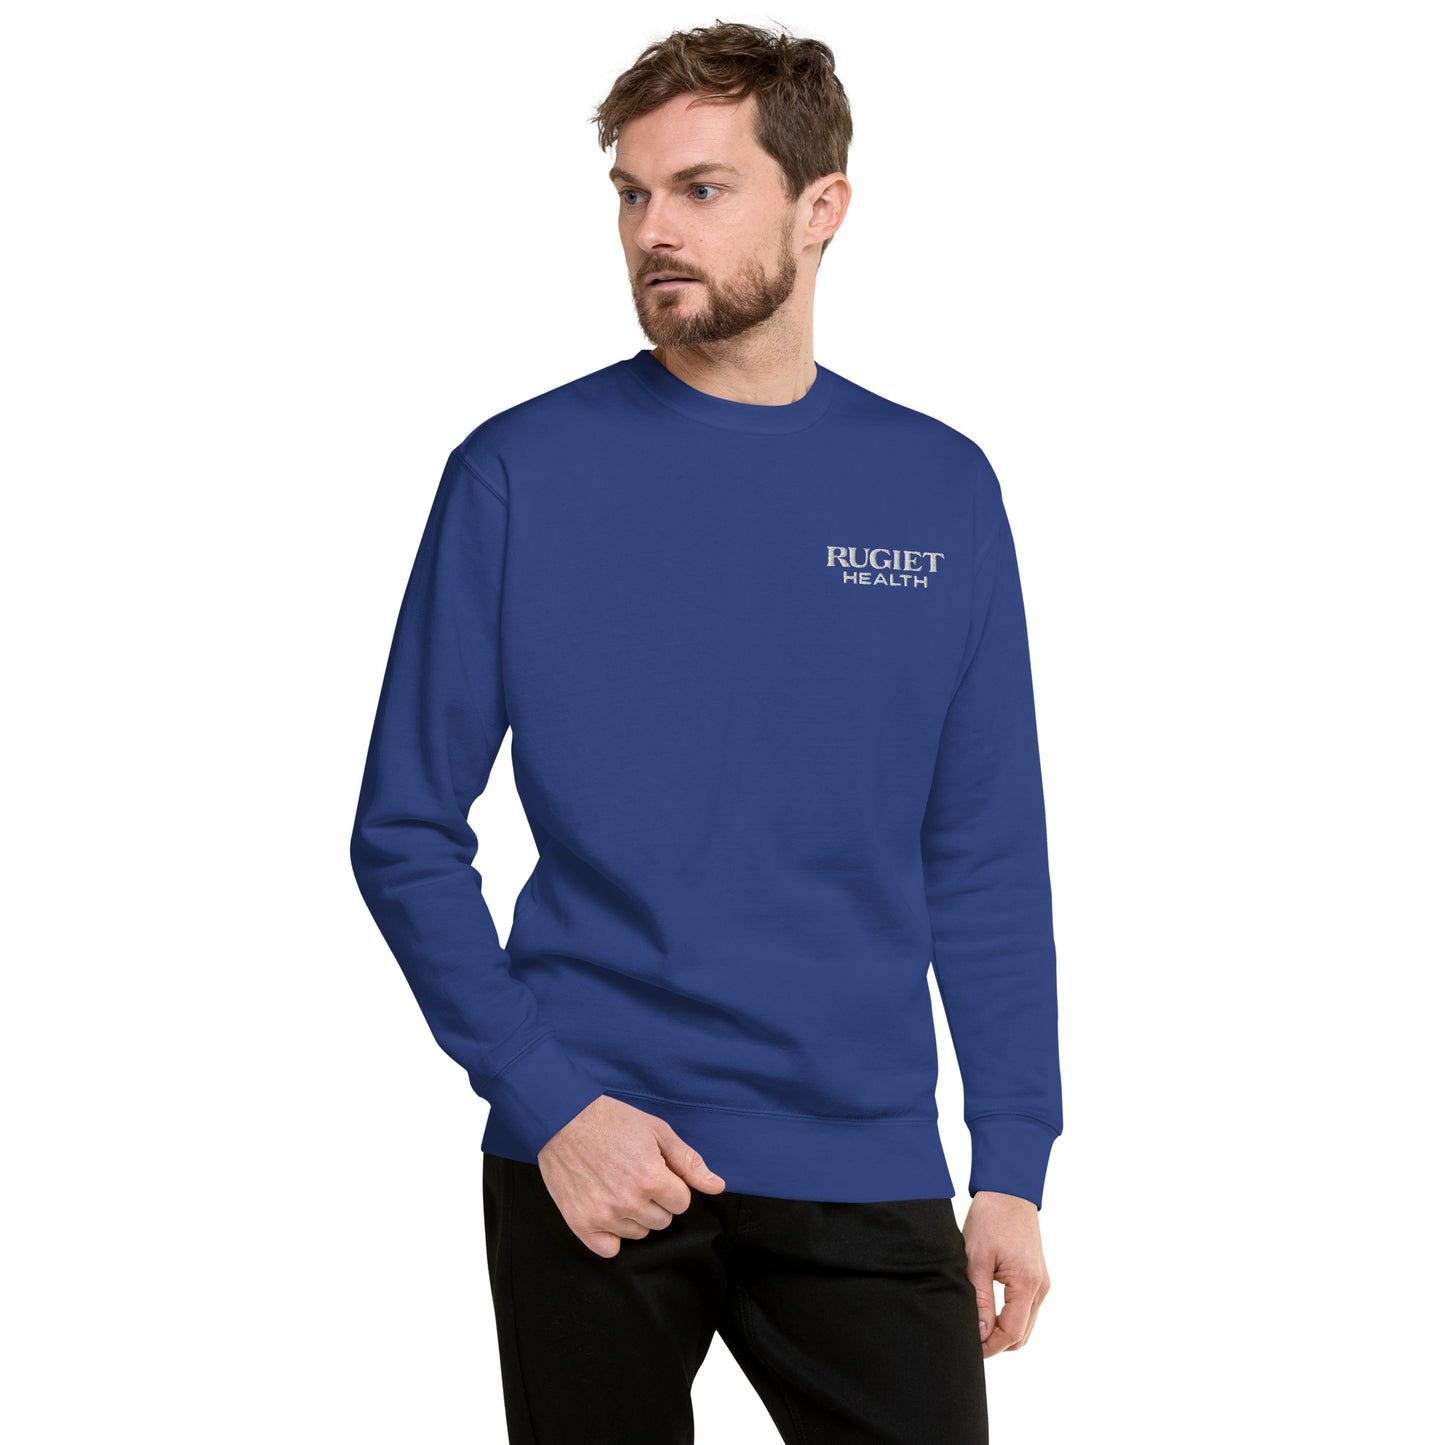 Unisex Premium Sweatshirt (fitted cut)